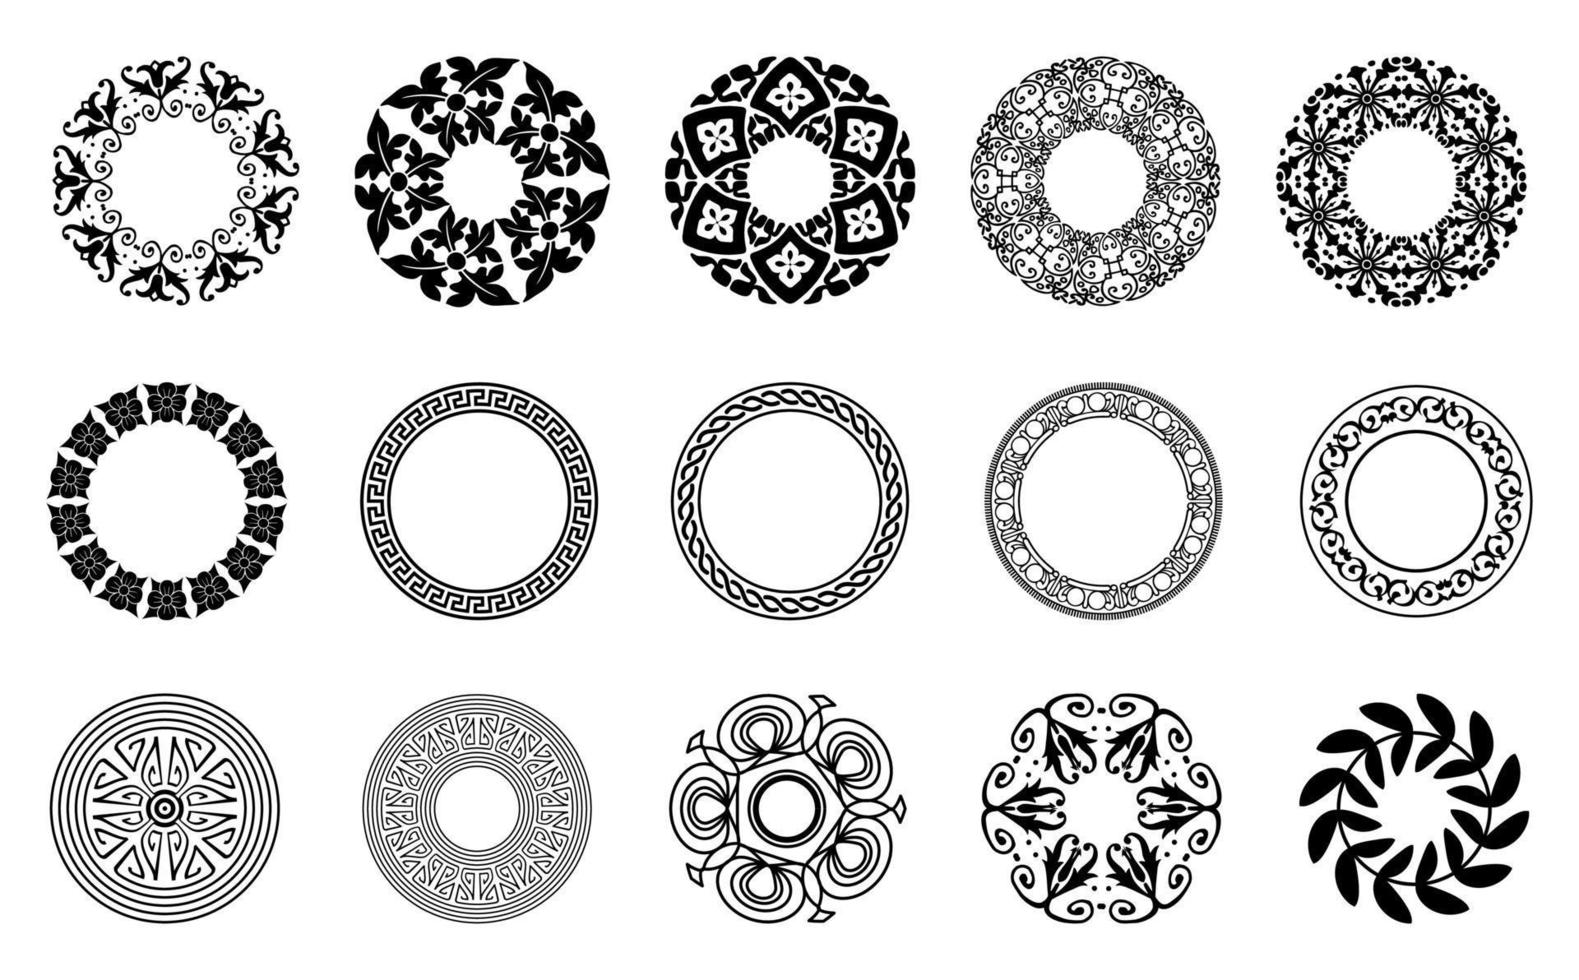 Mandala-Ornament-Set in runder Form, vektortransparenter Hintergrund, gut für eine Vielzahl von Designmaterialien, Hintergründen, Einladungen, Postern, sozialen Medien, Vorlagen vektor